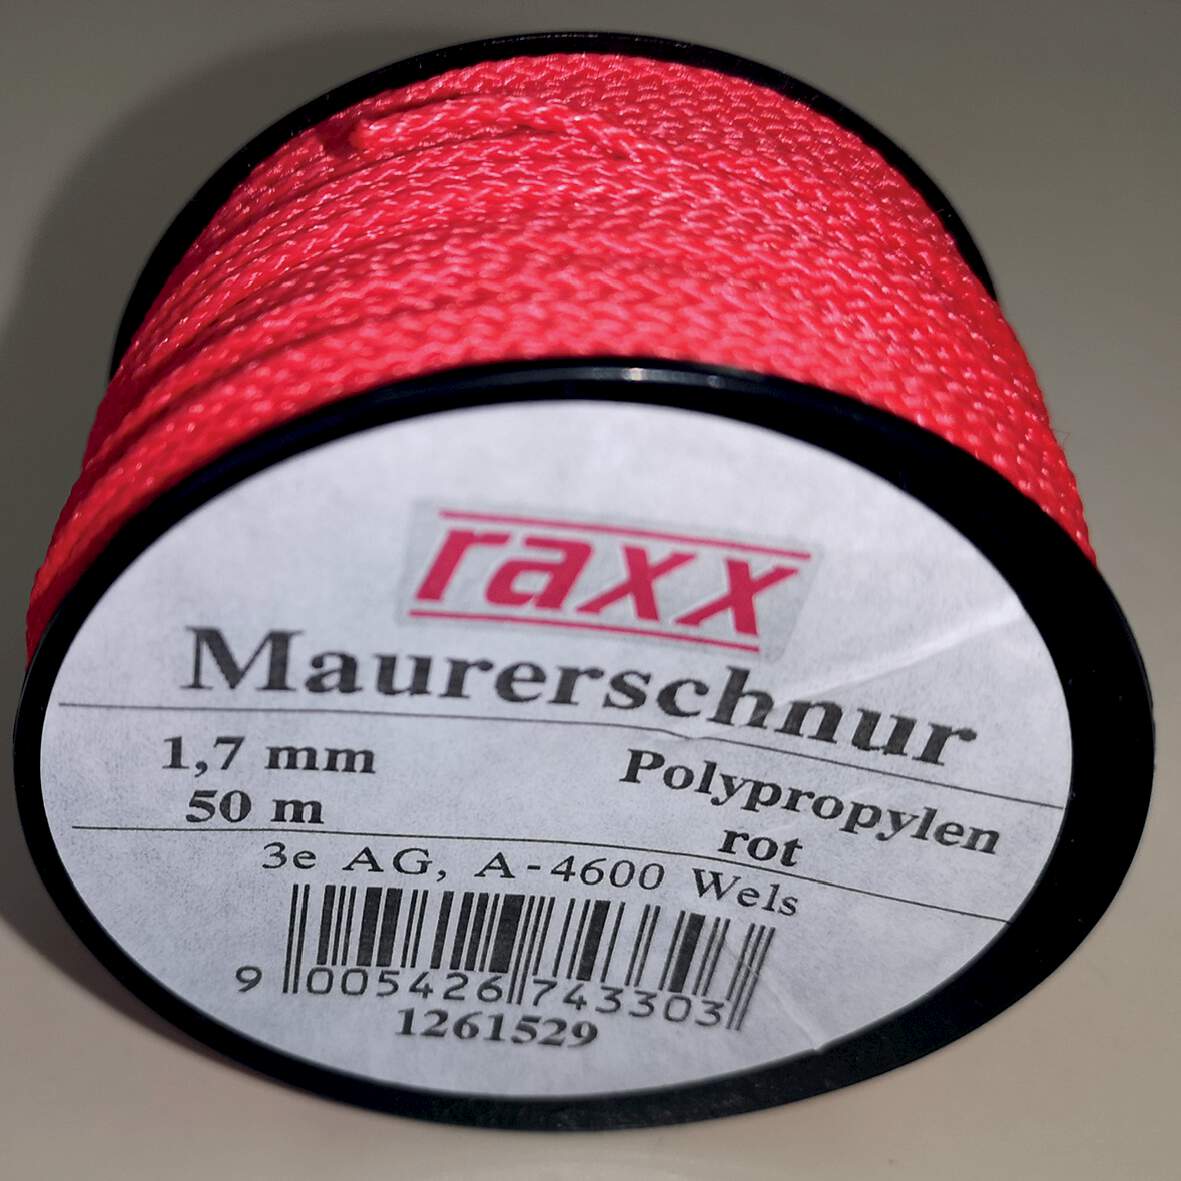 1261529 - Maurerschnur PP-geflochten rot 1,7mmx50m